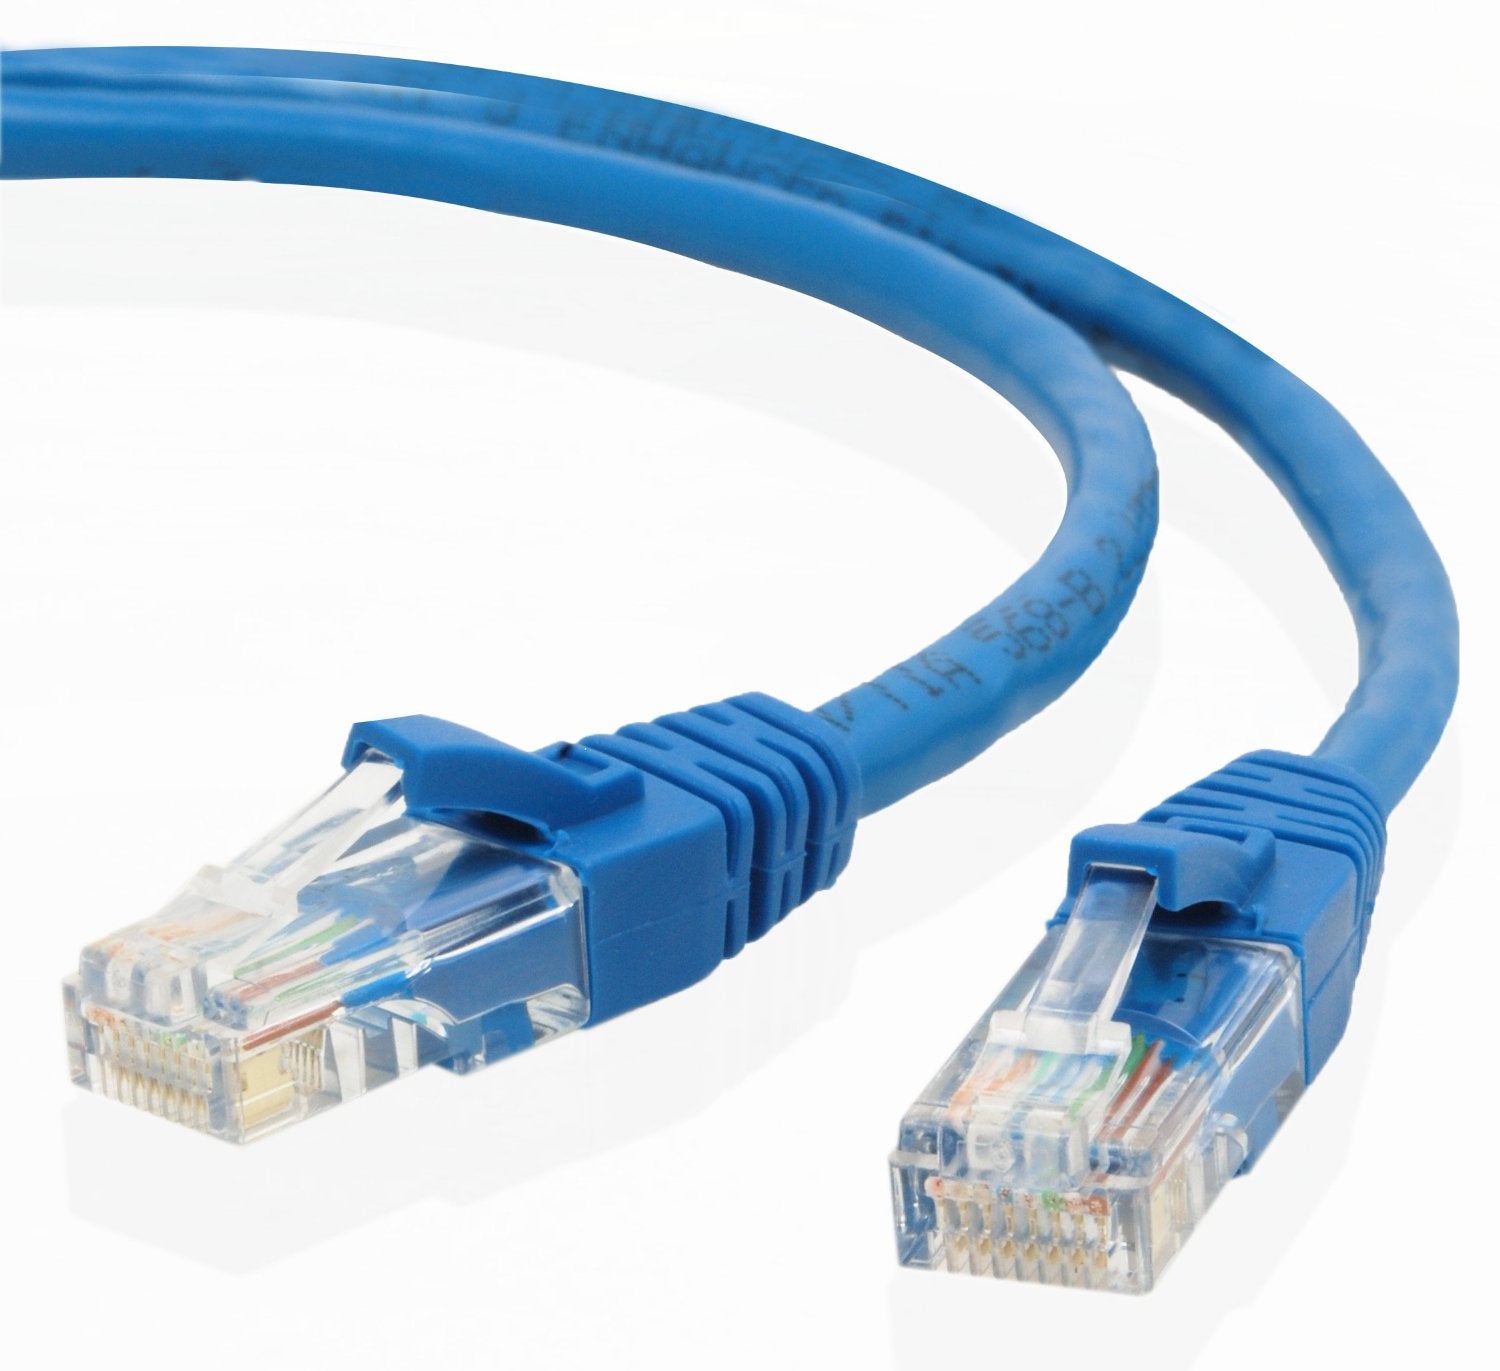 Network Cable - 5M RJ45M to RJ45M Cat5E UTP